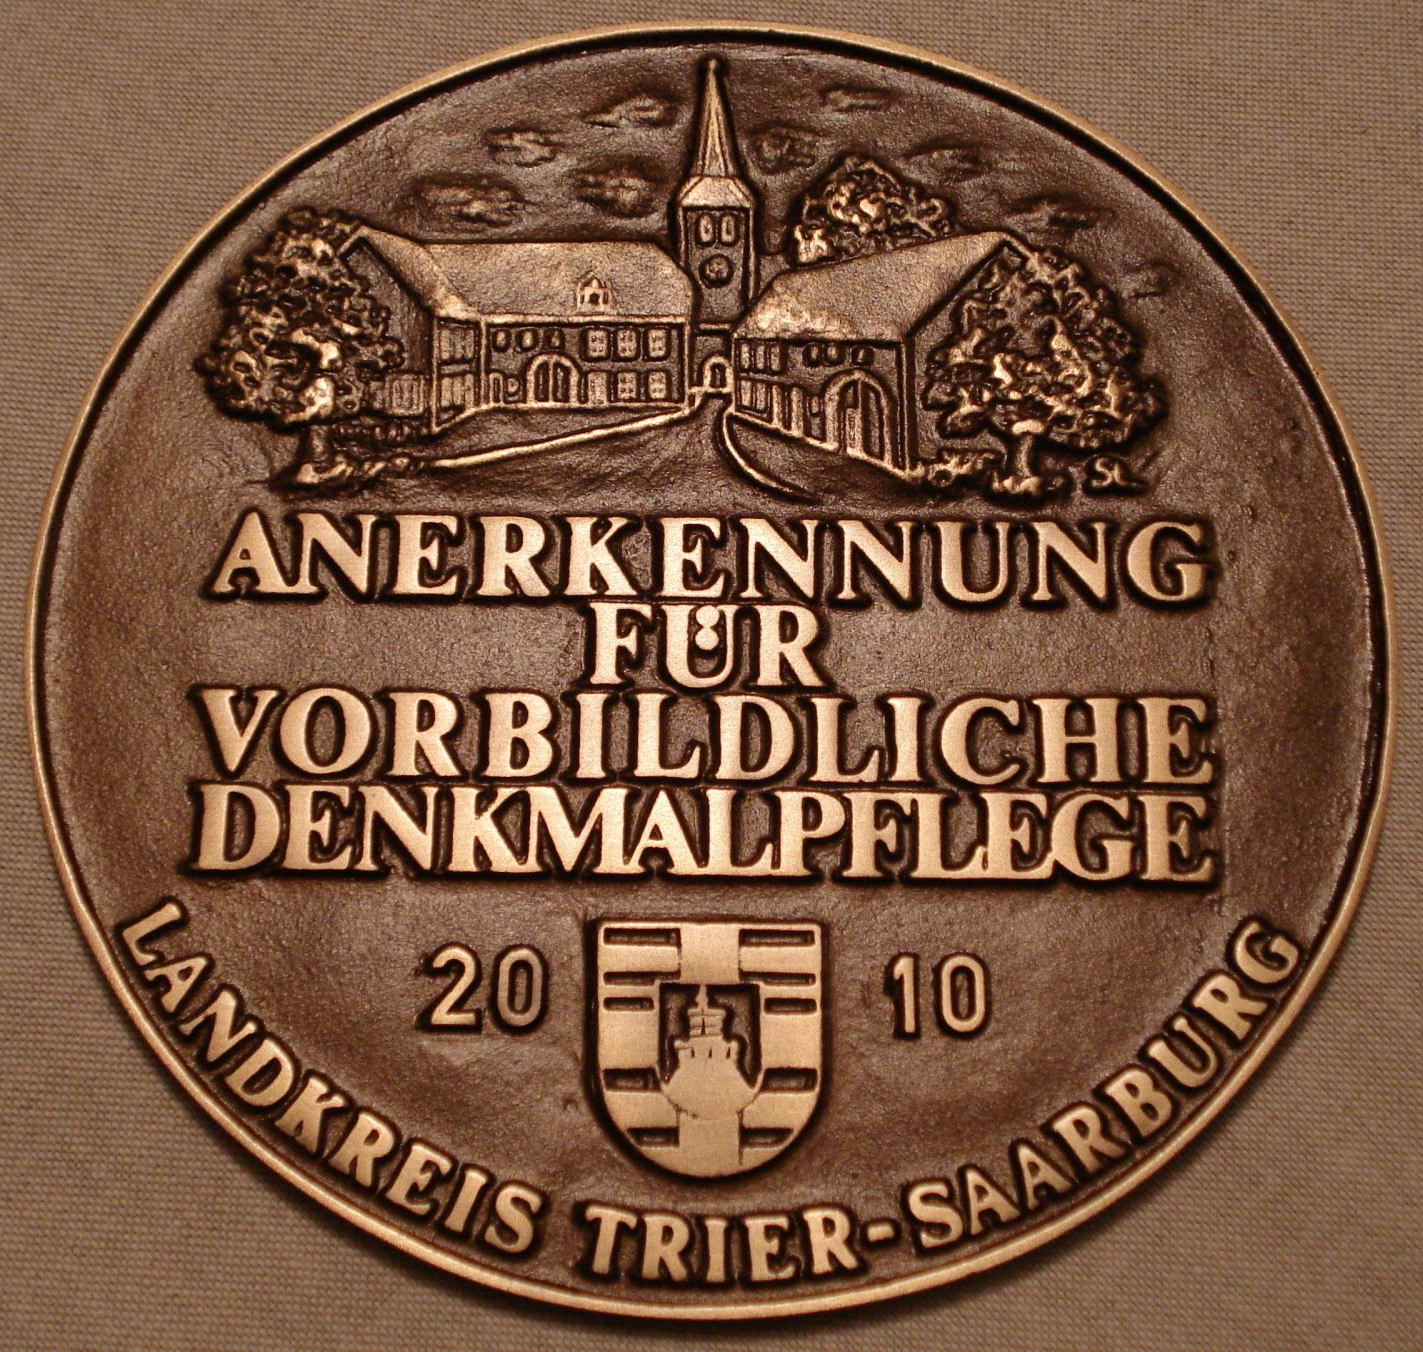 Denkmalpflegeplakette des Kreis Trier-Saarburg